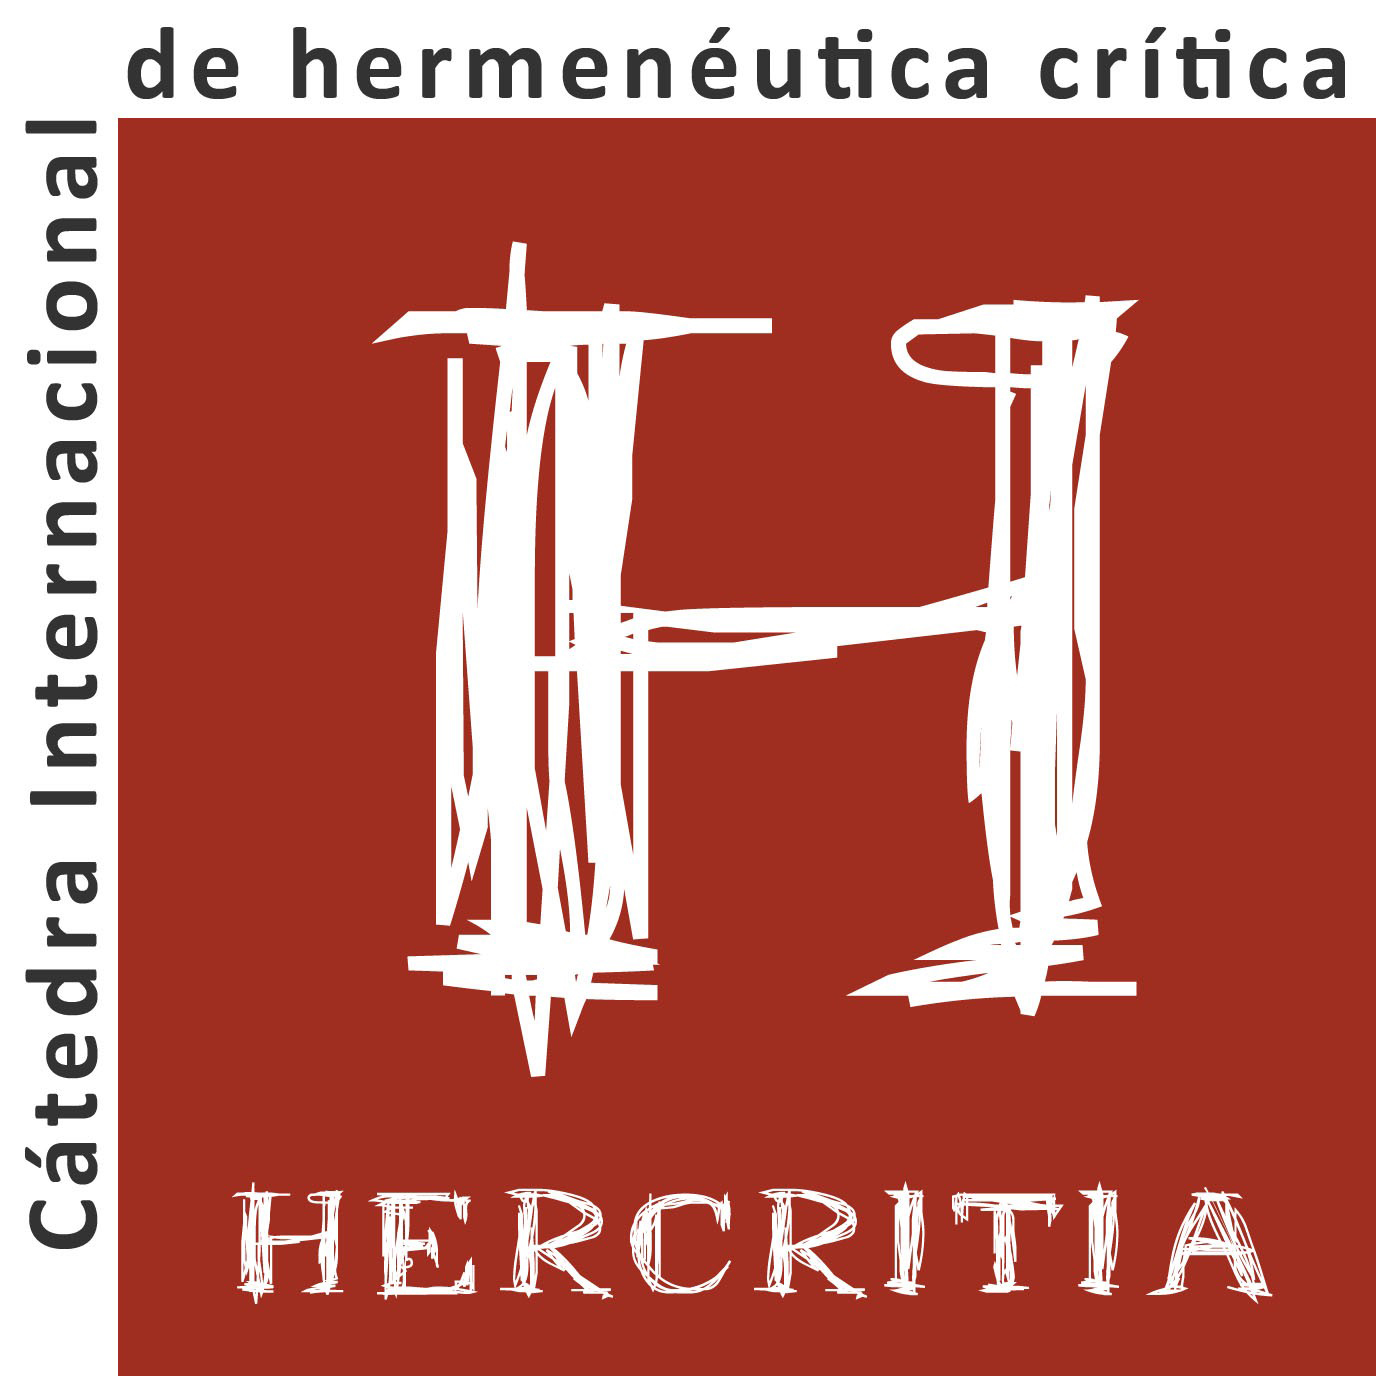 (c) Catedradehermeneutica.org